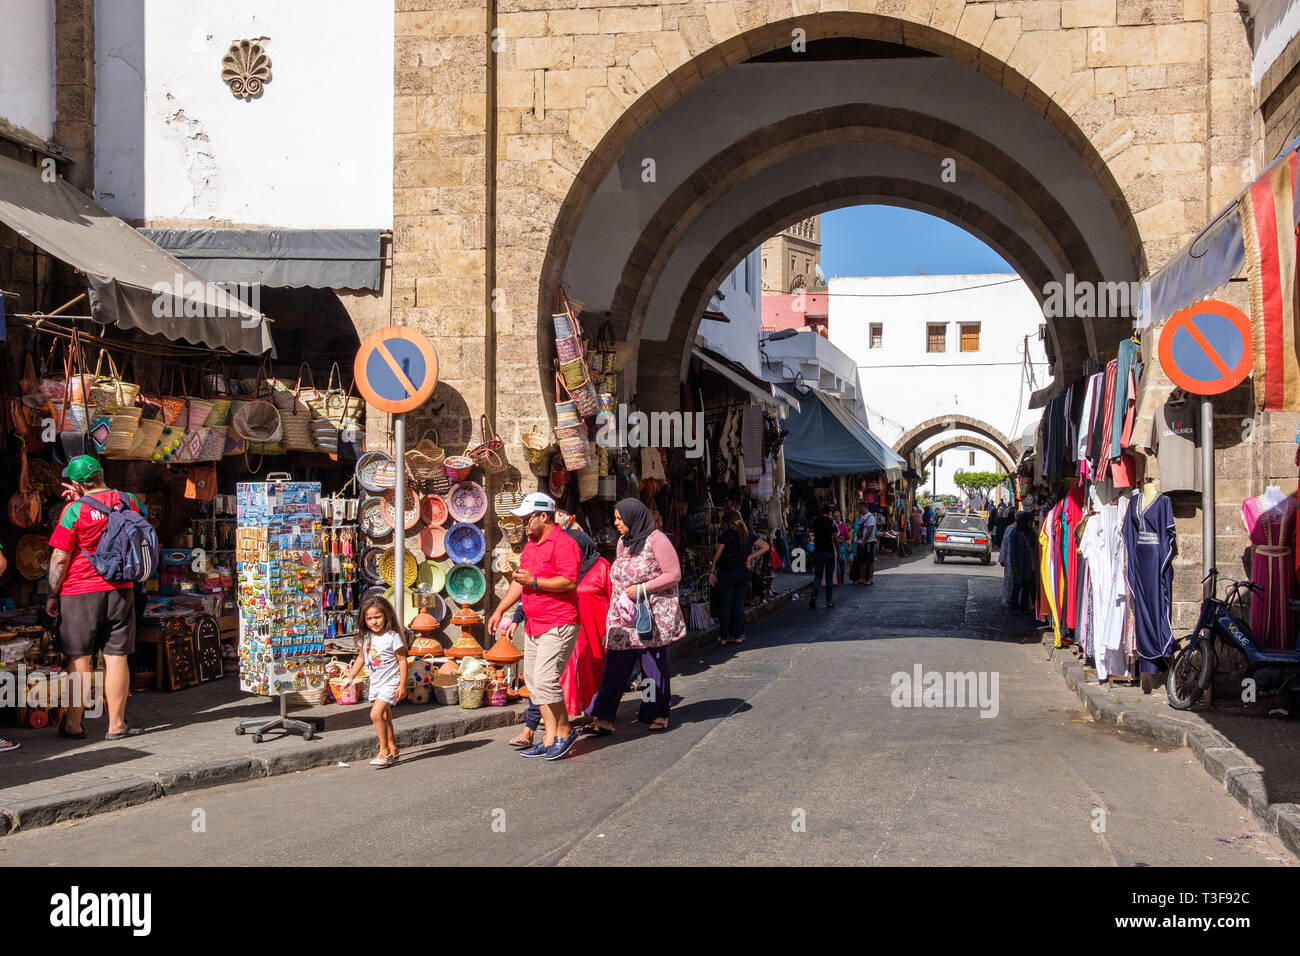 Il Marocco, Casablanca. Distretto Habous. Unico in Marocco, il distretto Habous nella parte meridionale della città, appena dietro il Palazzo Reale, raccoglie m Foto Stock